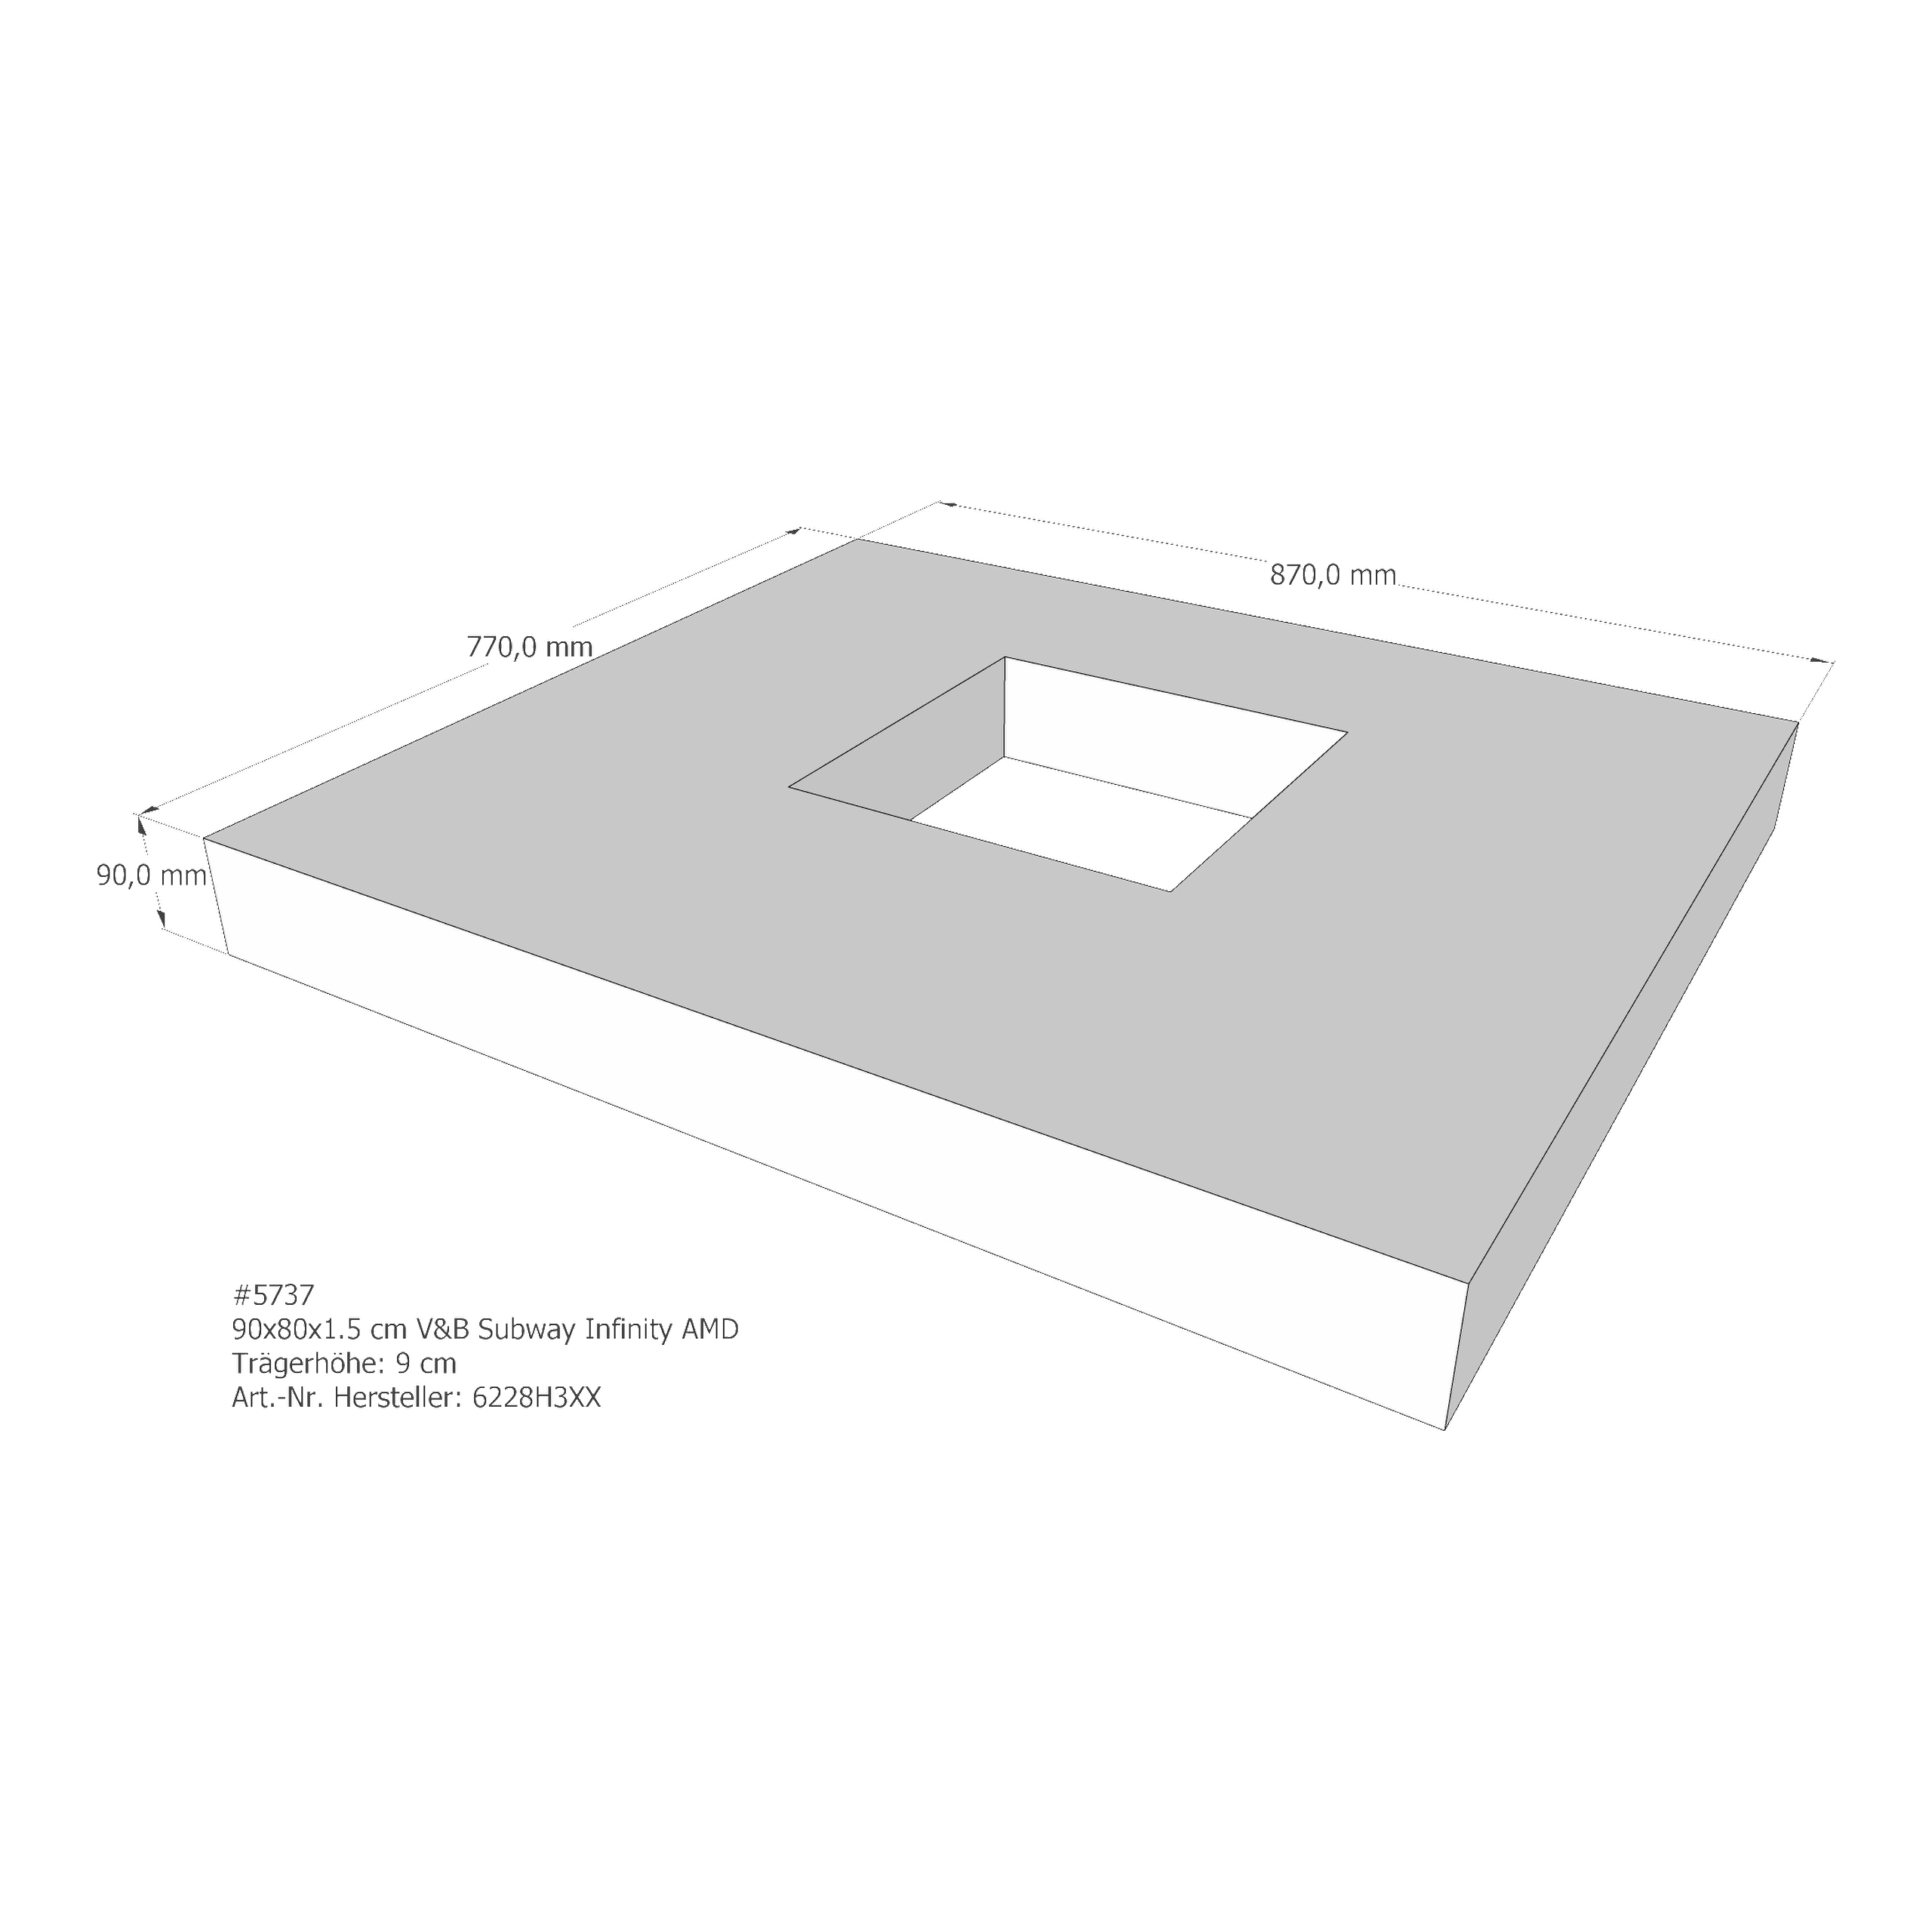 Duschwannenträger für Villeroy & Boch Subway Infinity 90 × 80 × 1,5 cm